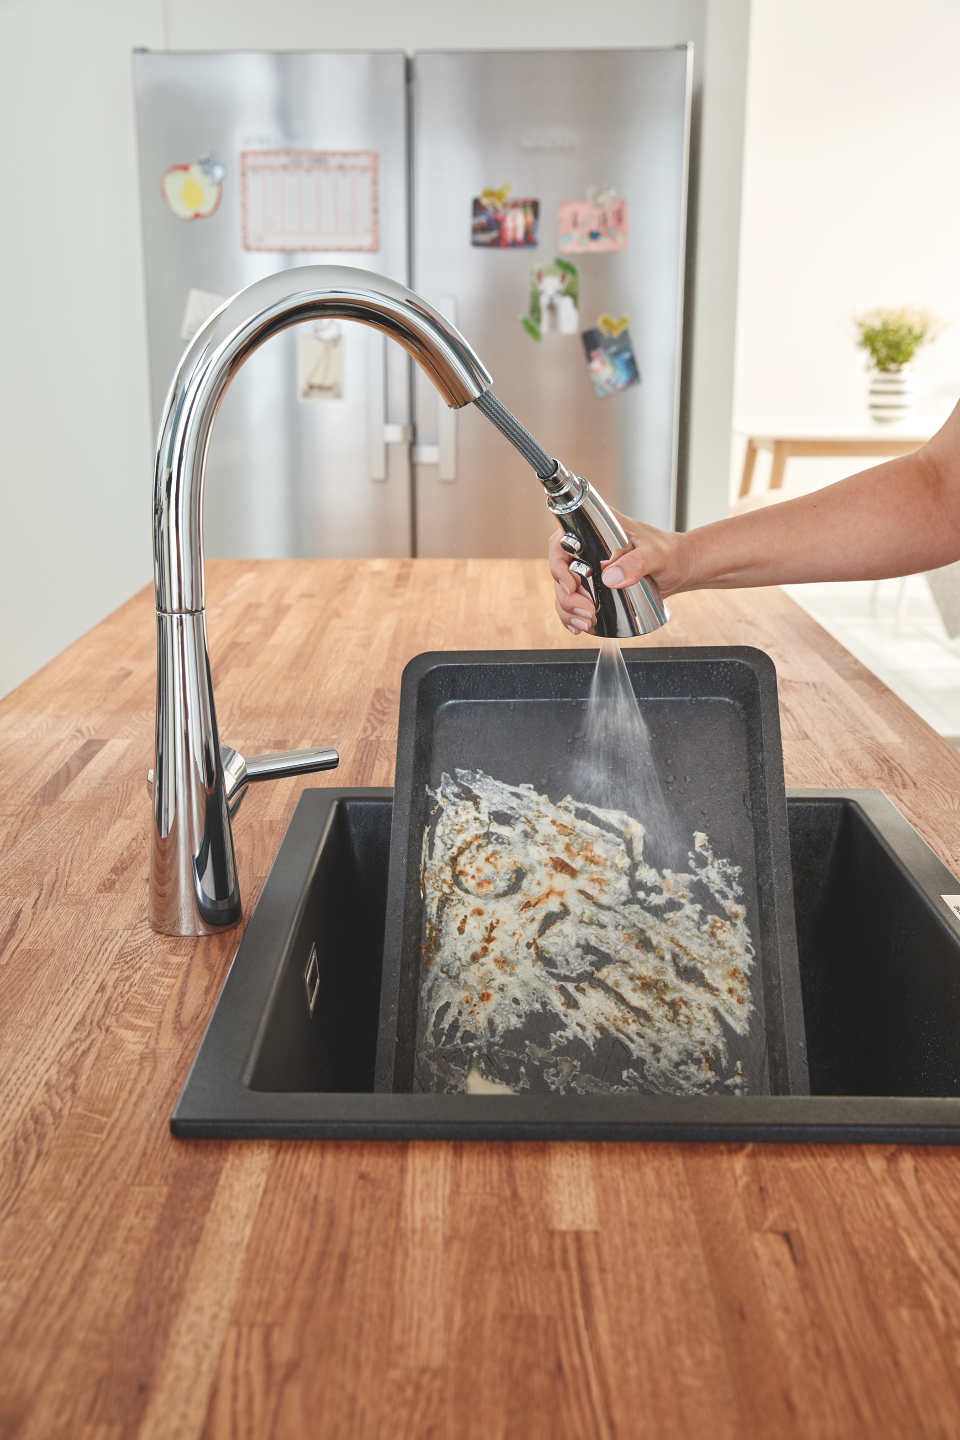 GROHE Zedra robinet de cuisine en chrome avec douchette extractible pour laver facilement la vaisselle